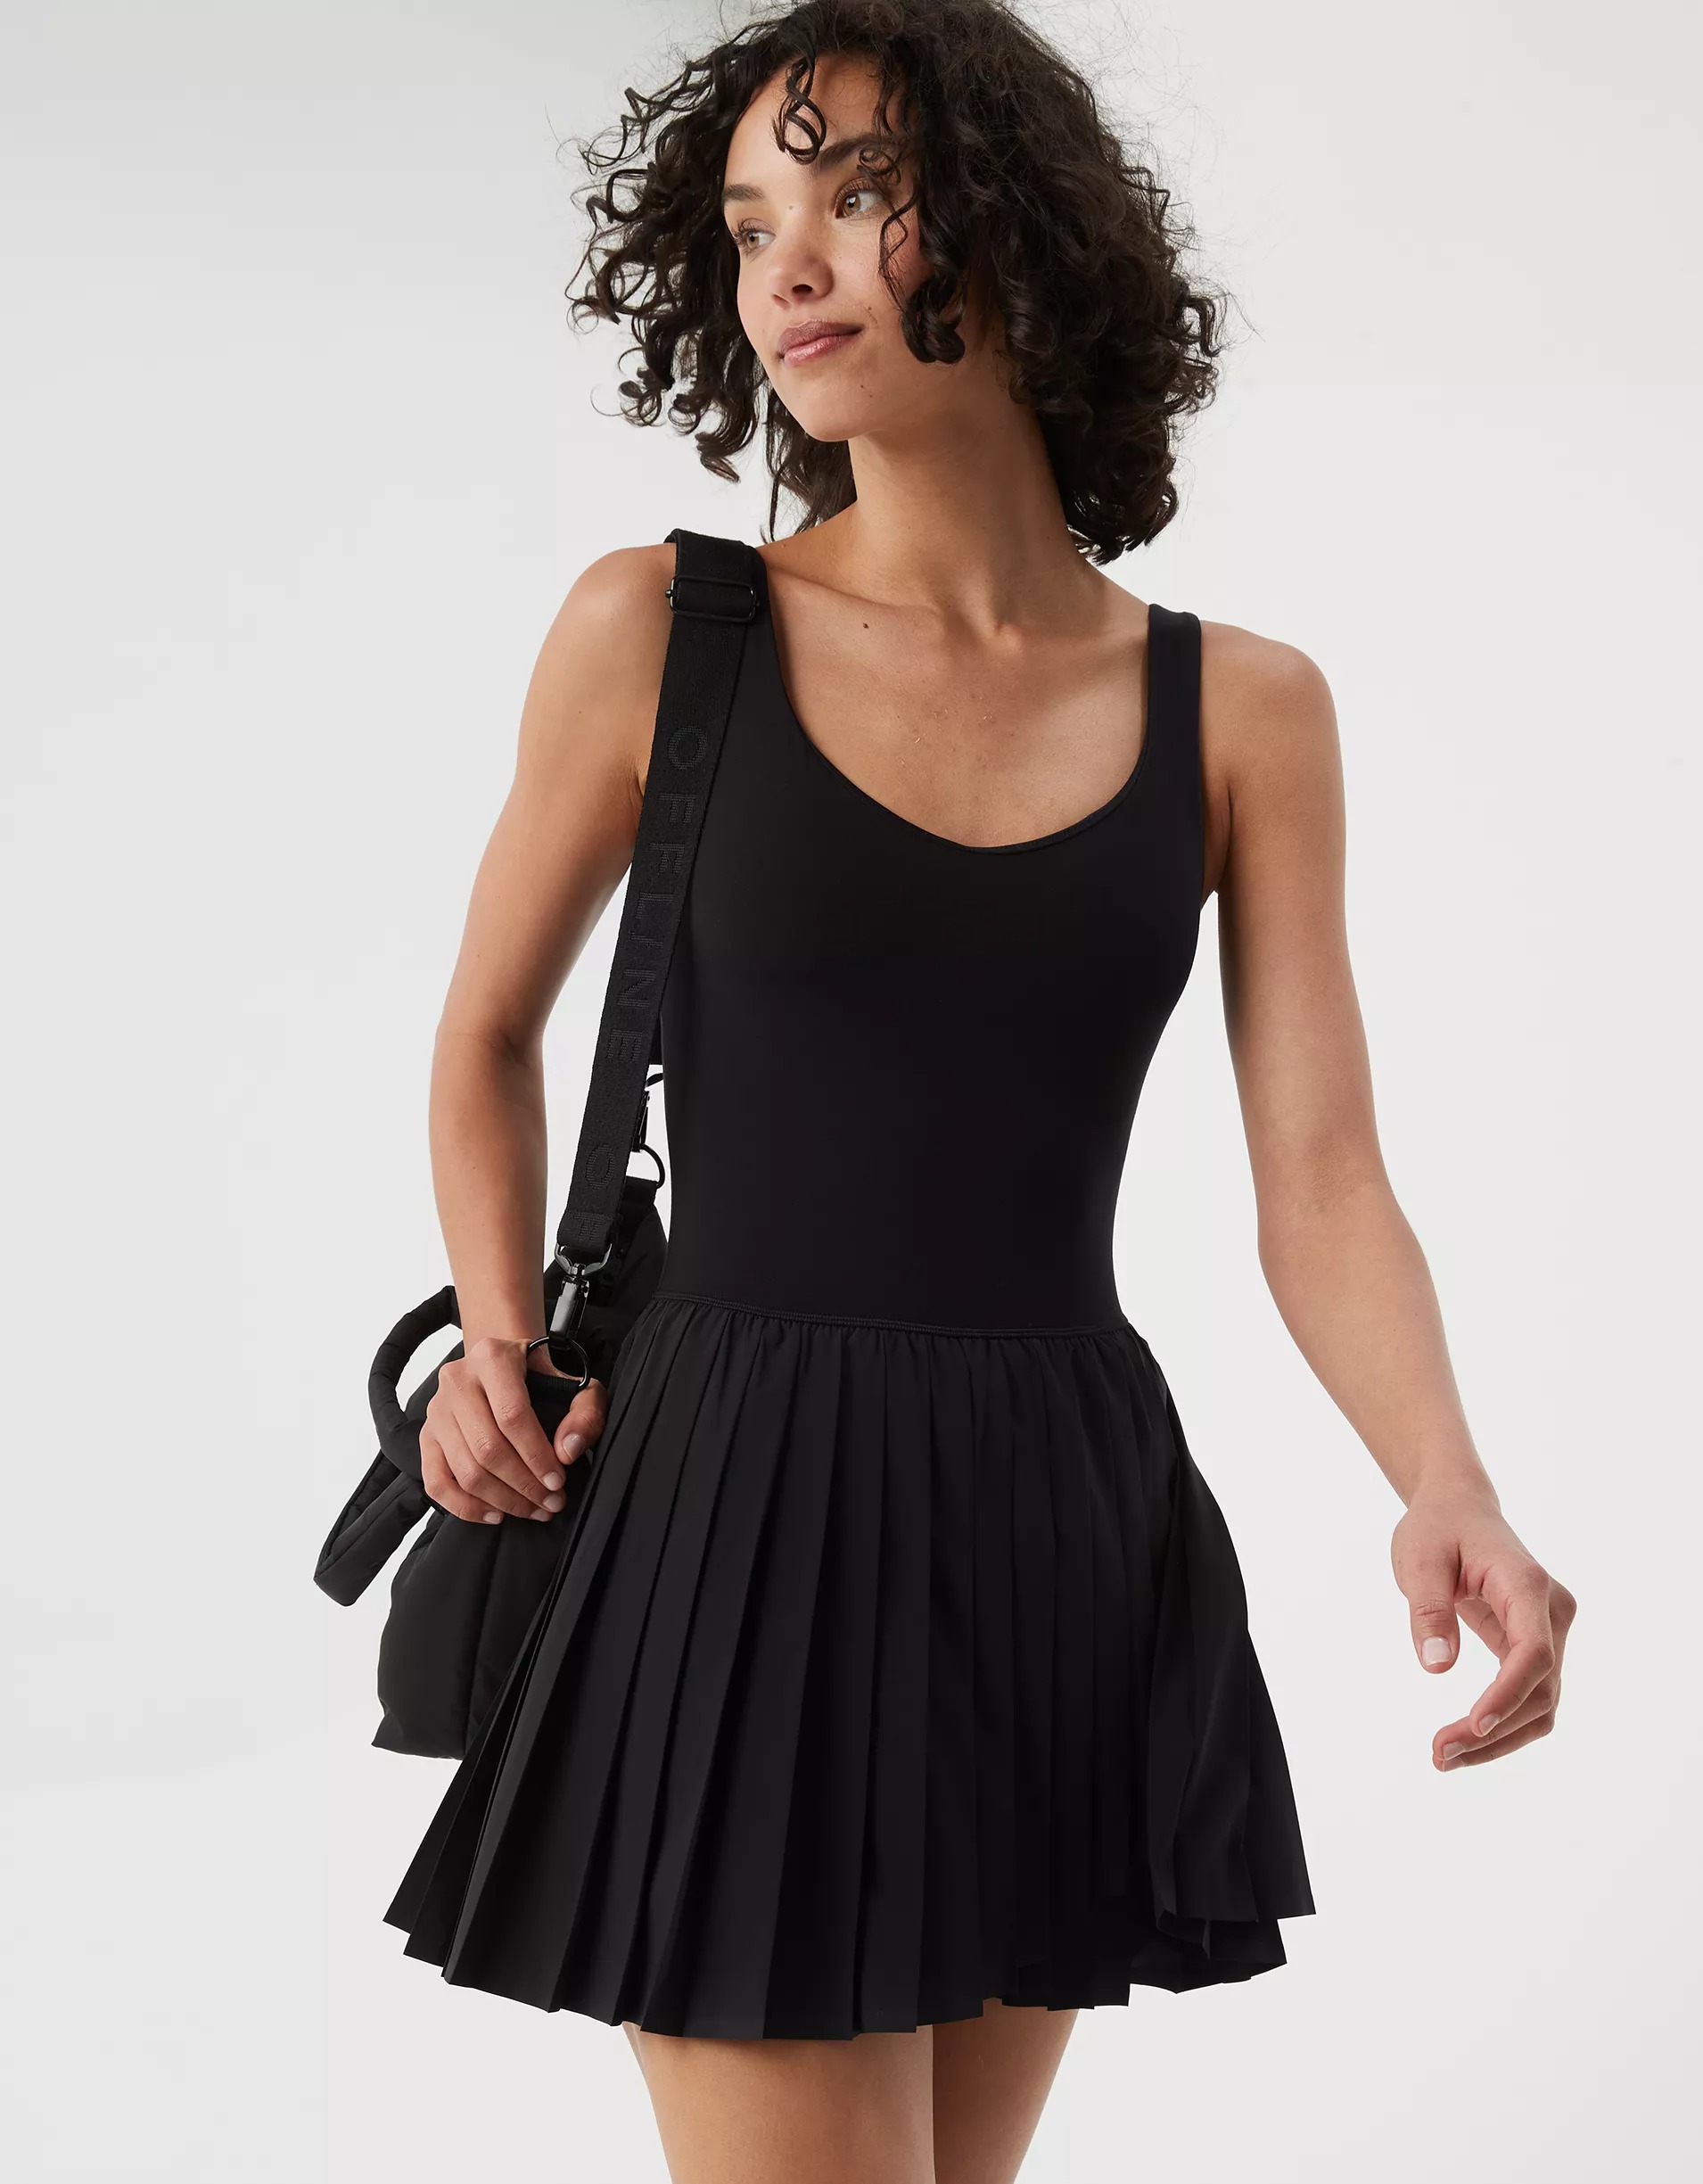 Model wearing black tennis dress